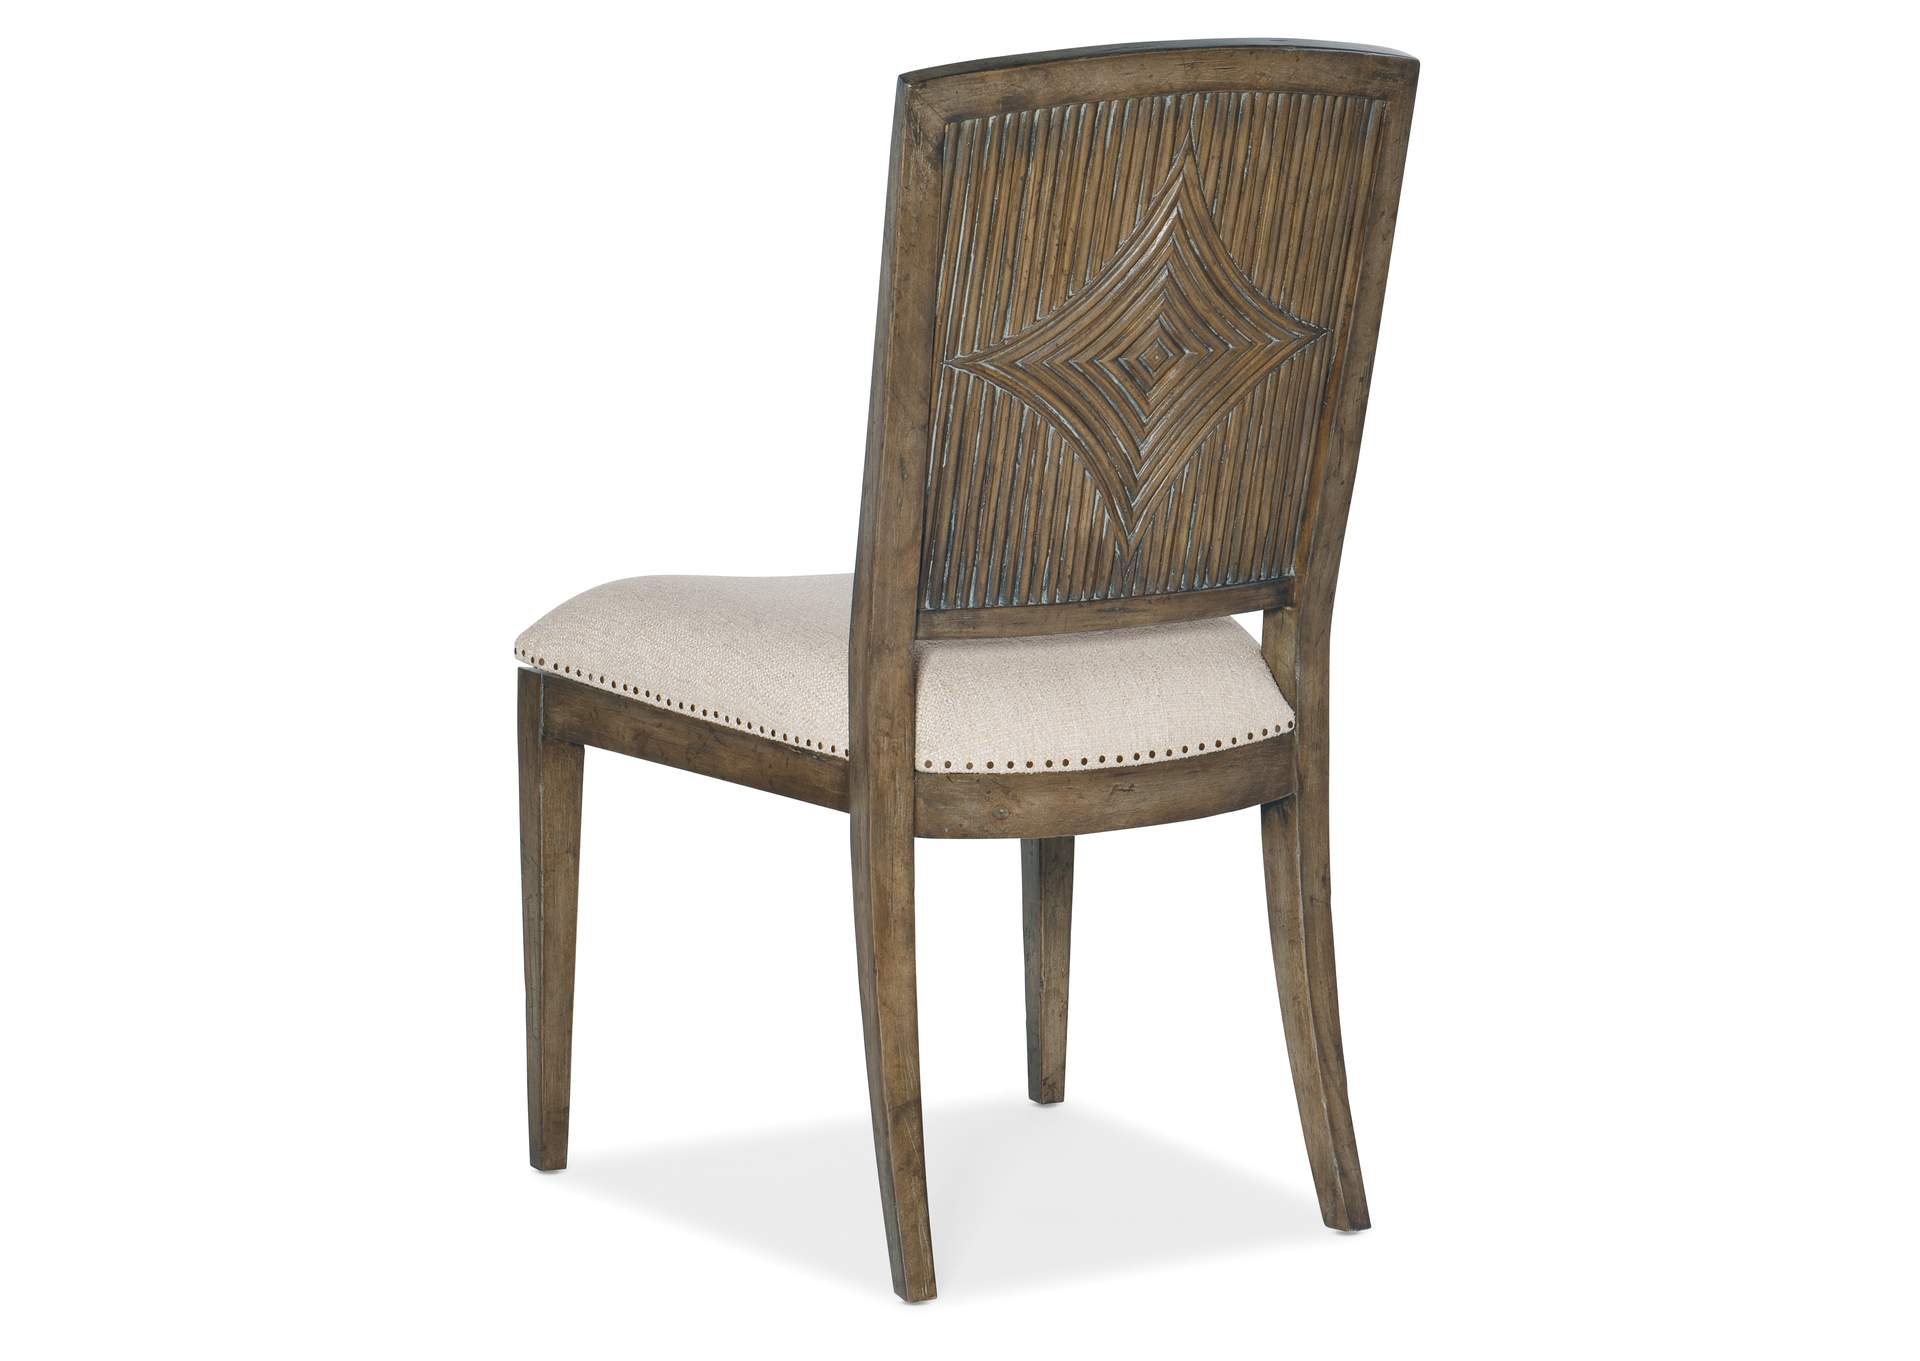 Sundance Carved Back Side Chair - 2 Per Ctn - Price Ea,Hooker Furniture